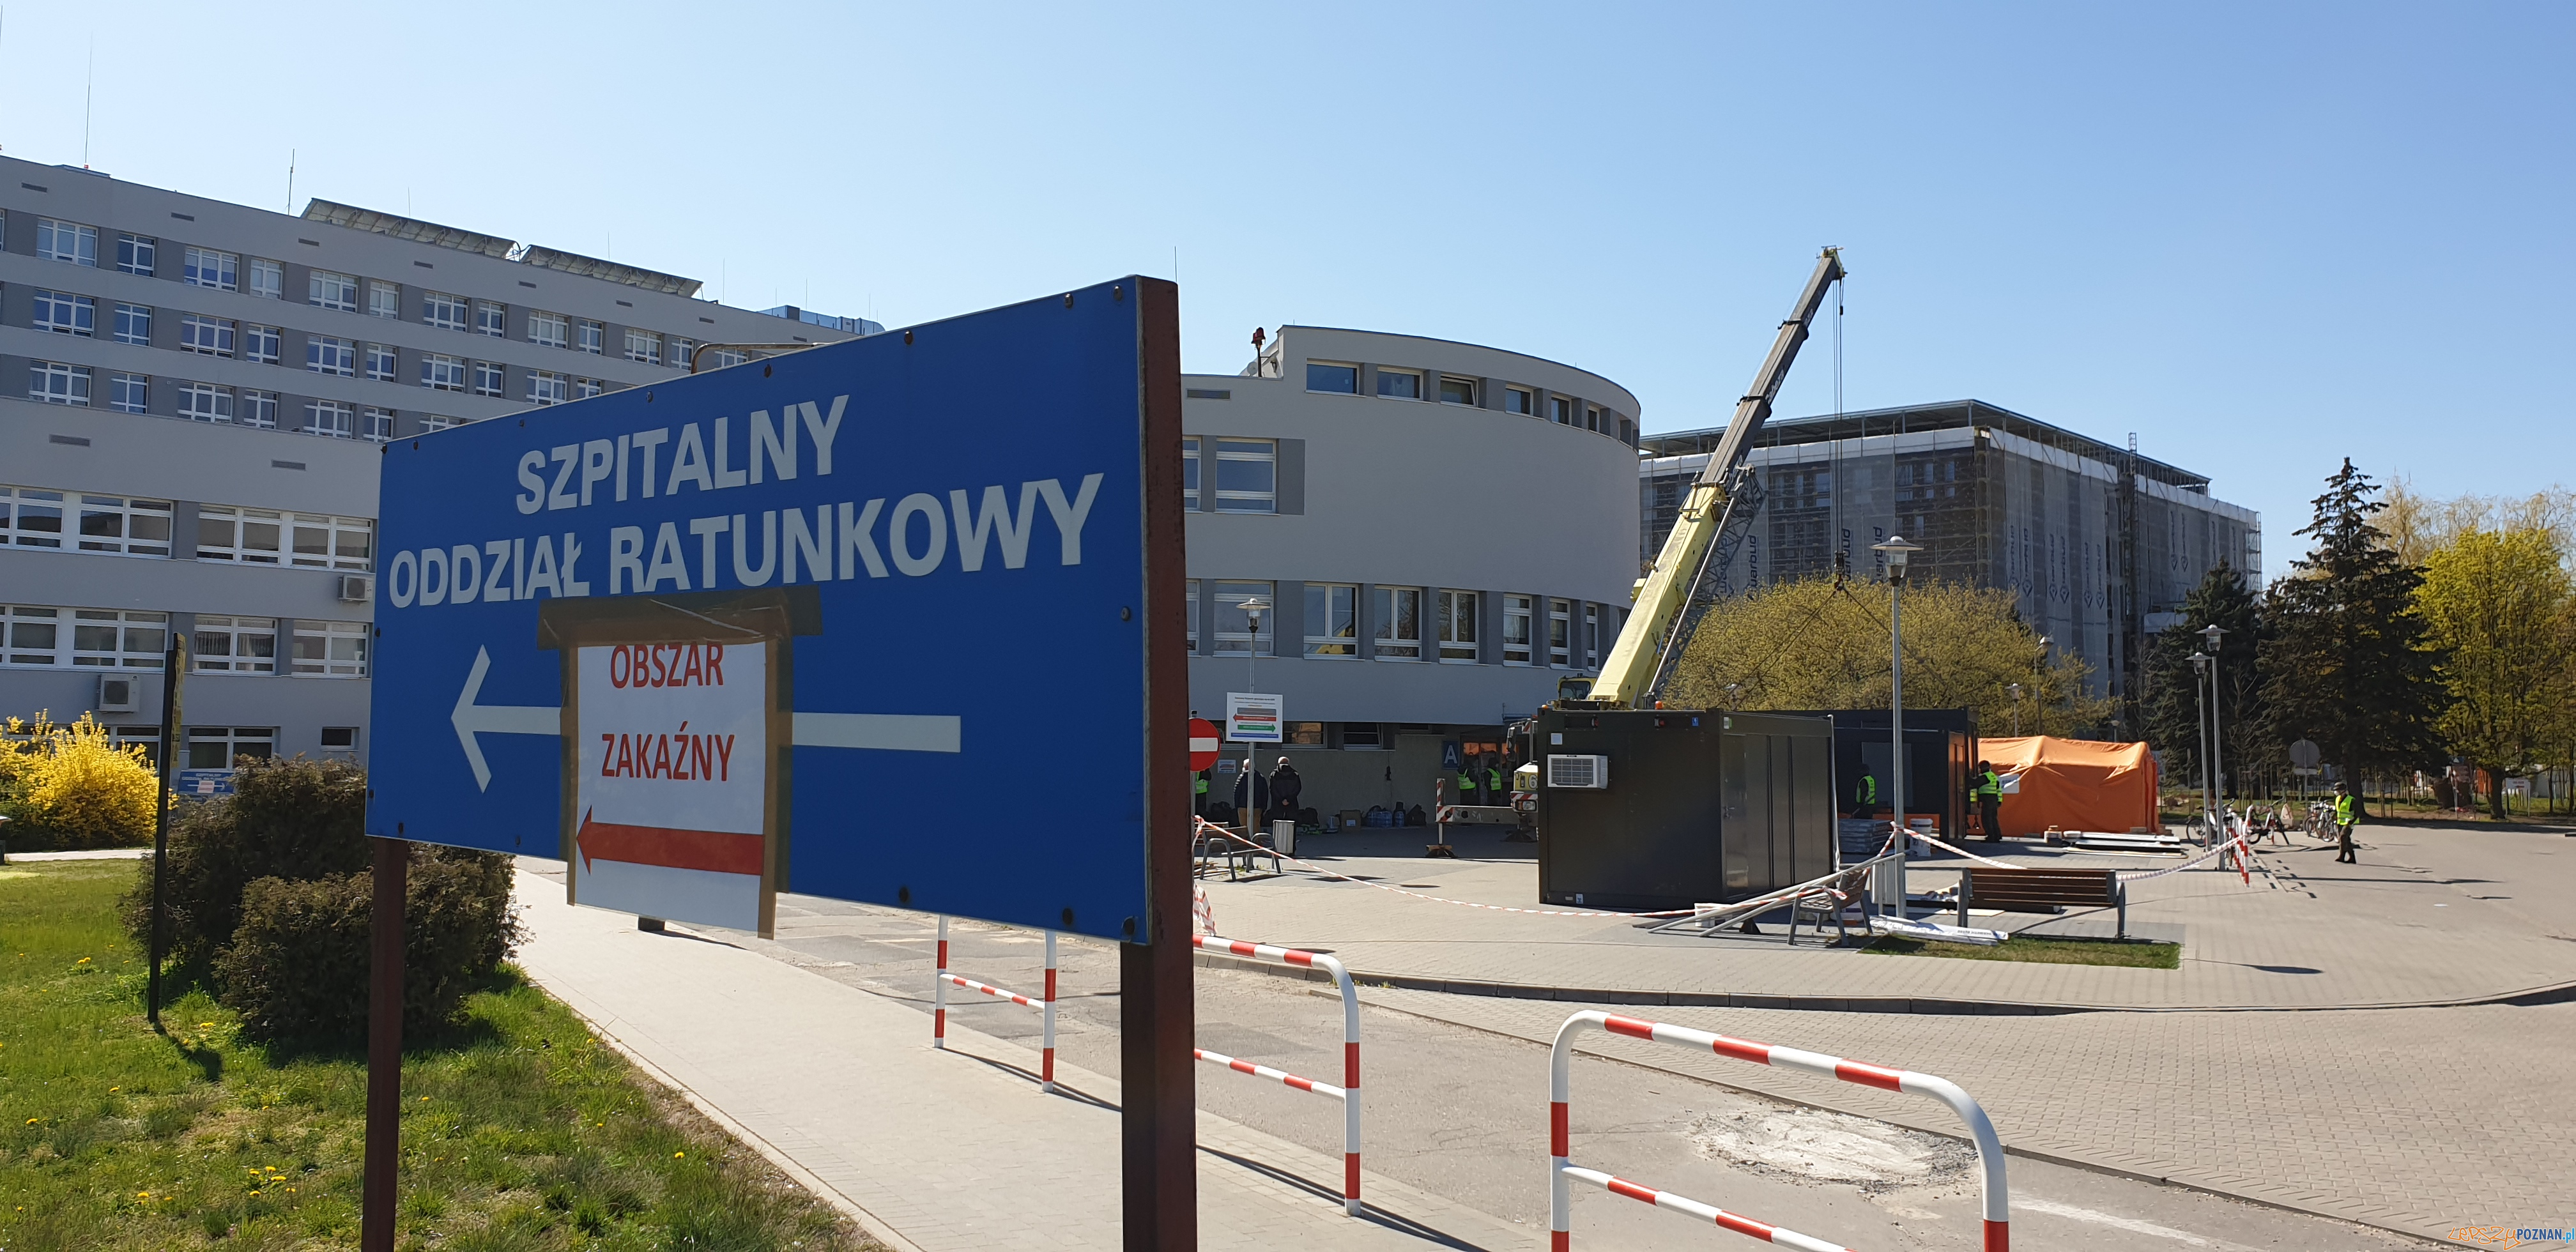 Szpital Wojewódzki: powstaje kontenerowa izba przyjęć  Foto: lepszyPOZNAN / Galaxy S9+